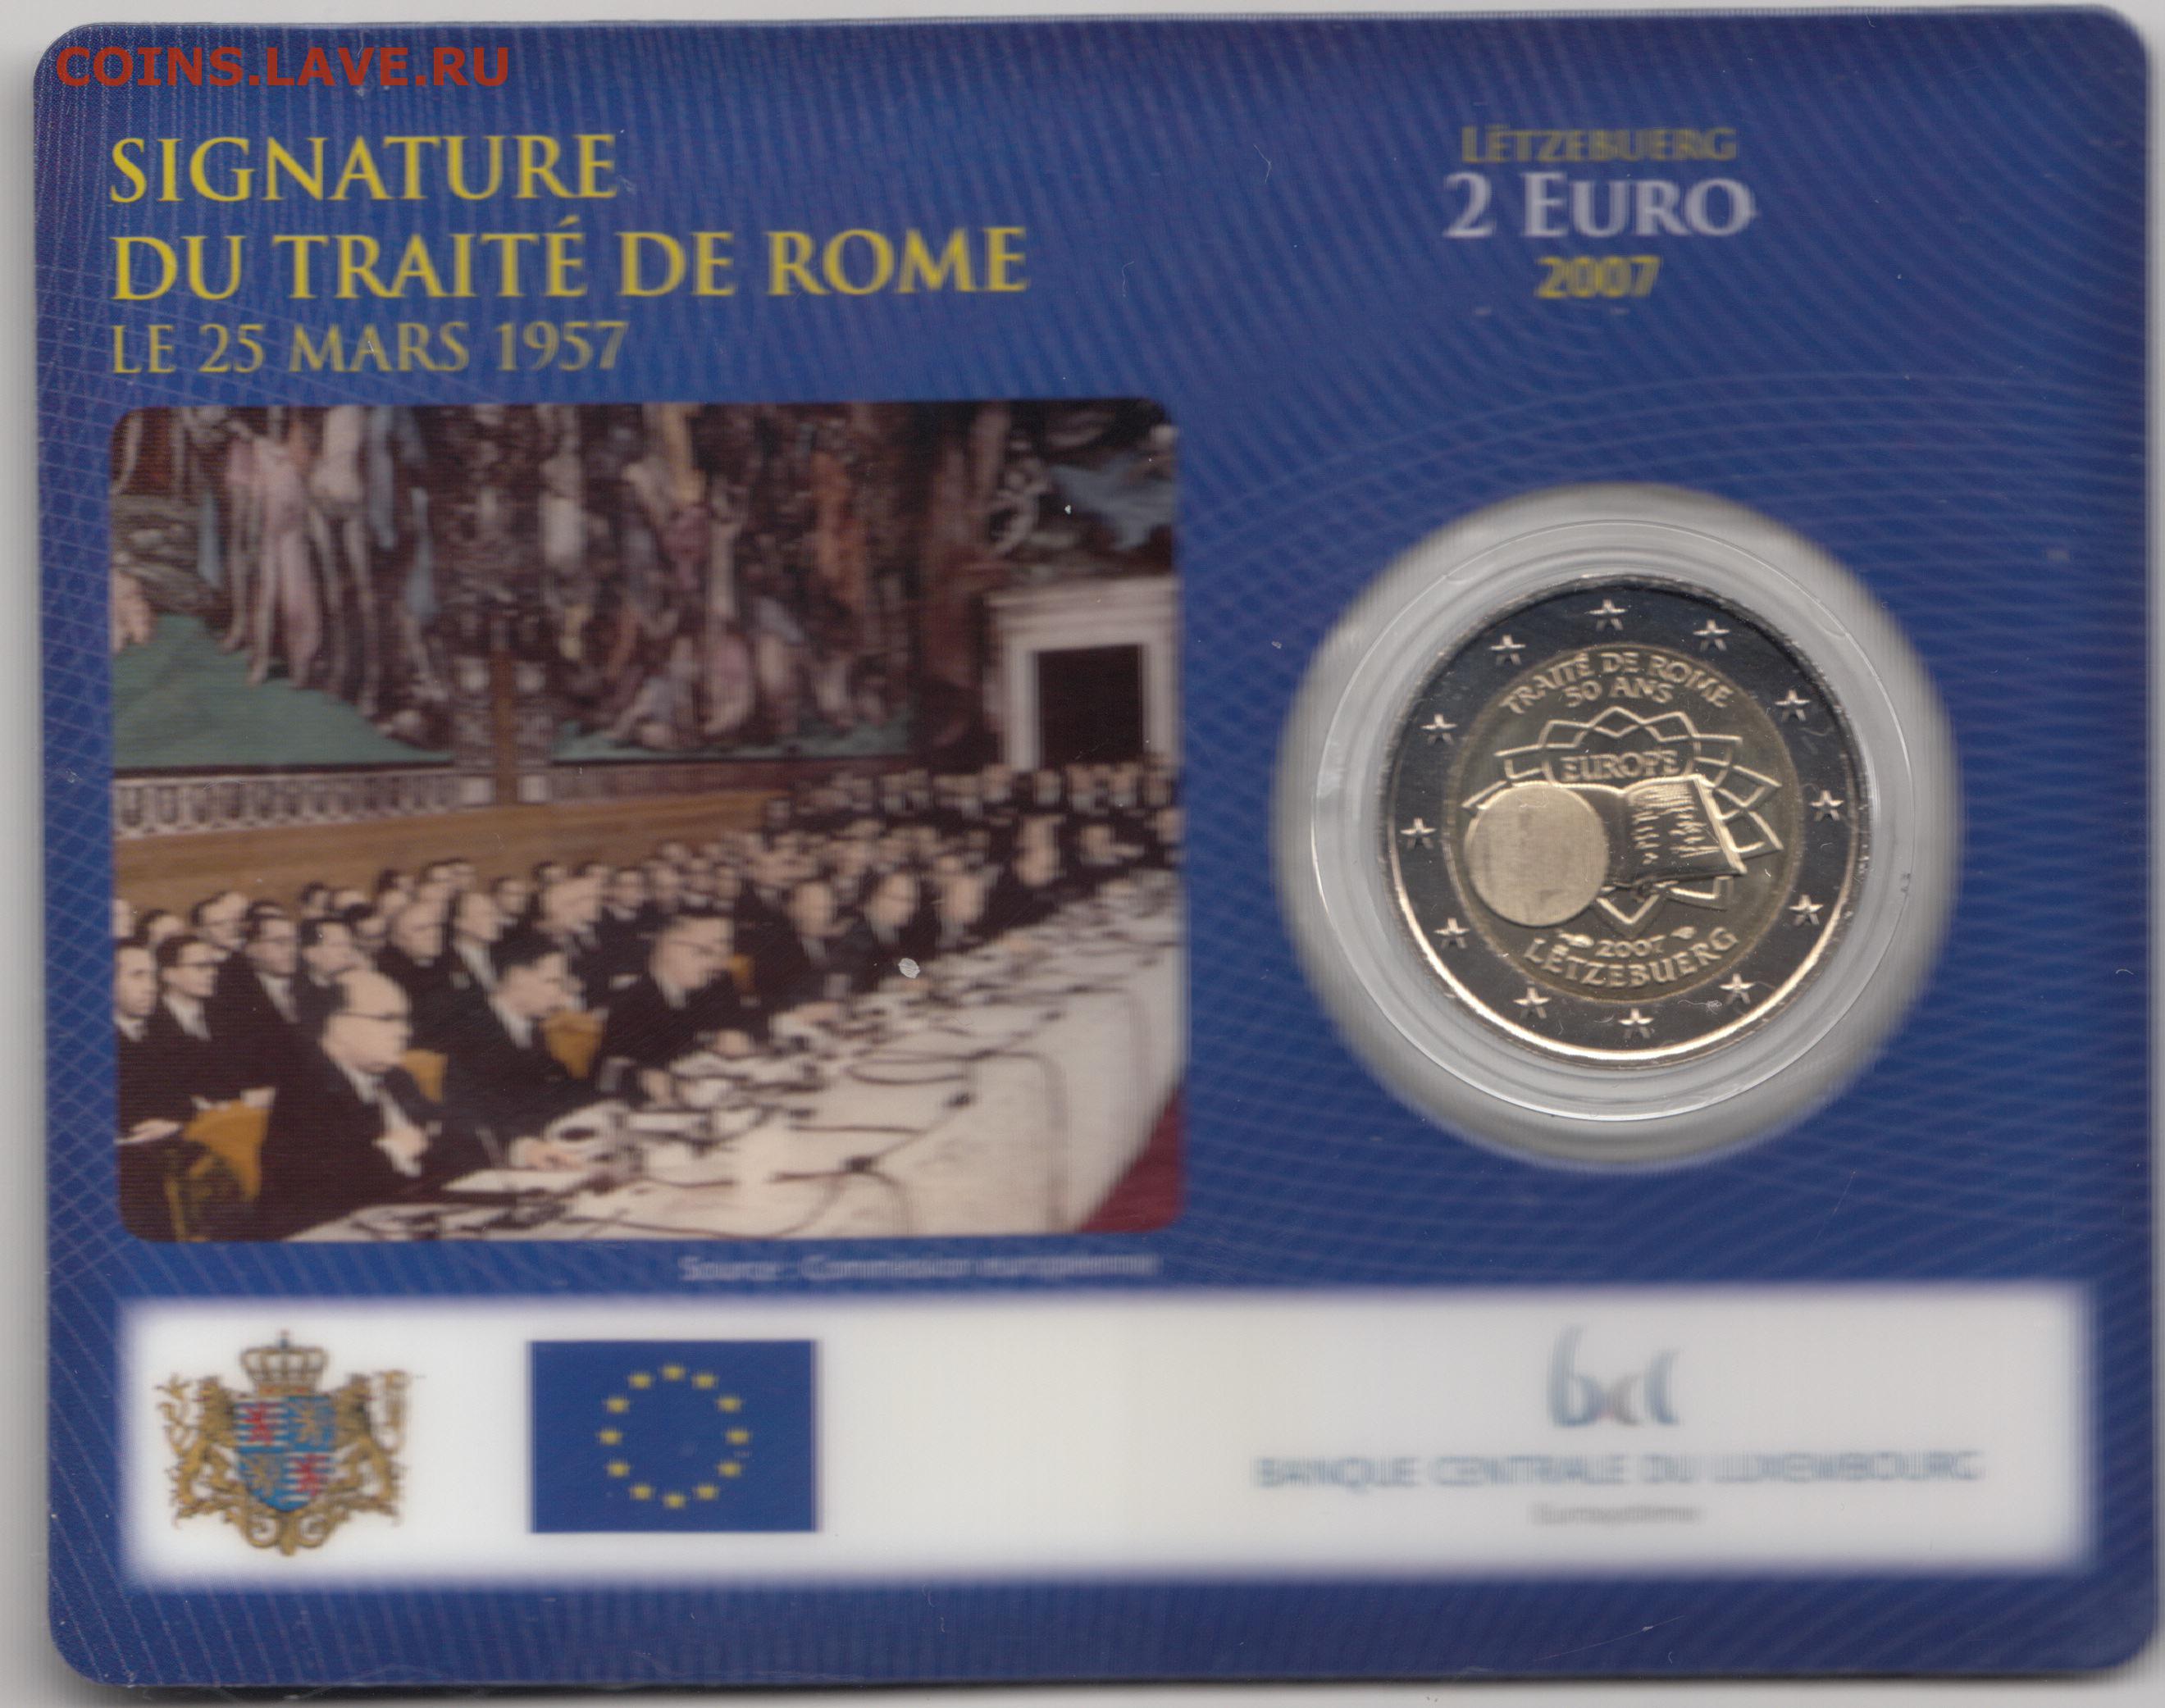 Римский договор 1957. 2 Евро 2007. 2 Euro Letzebuerg. 1 Евро 2007 года Люксембург. Монеты посвященные 50 лет подписания Римского договора.